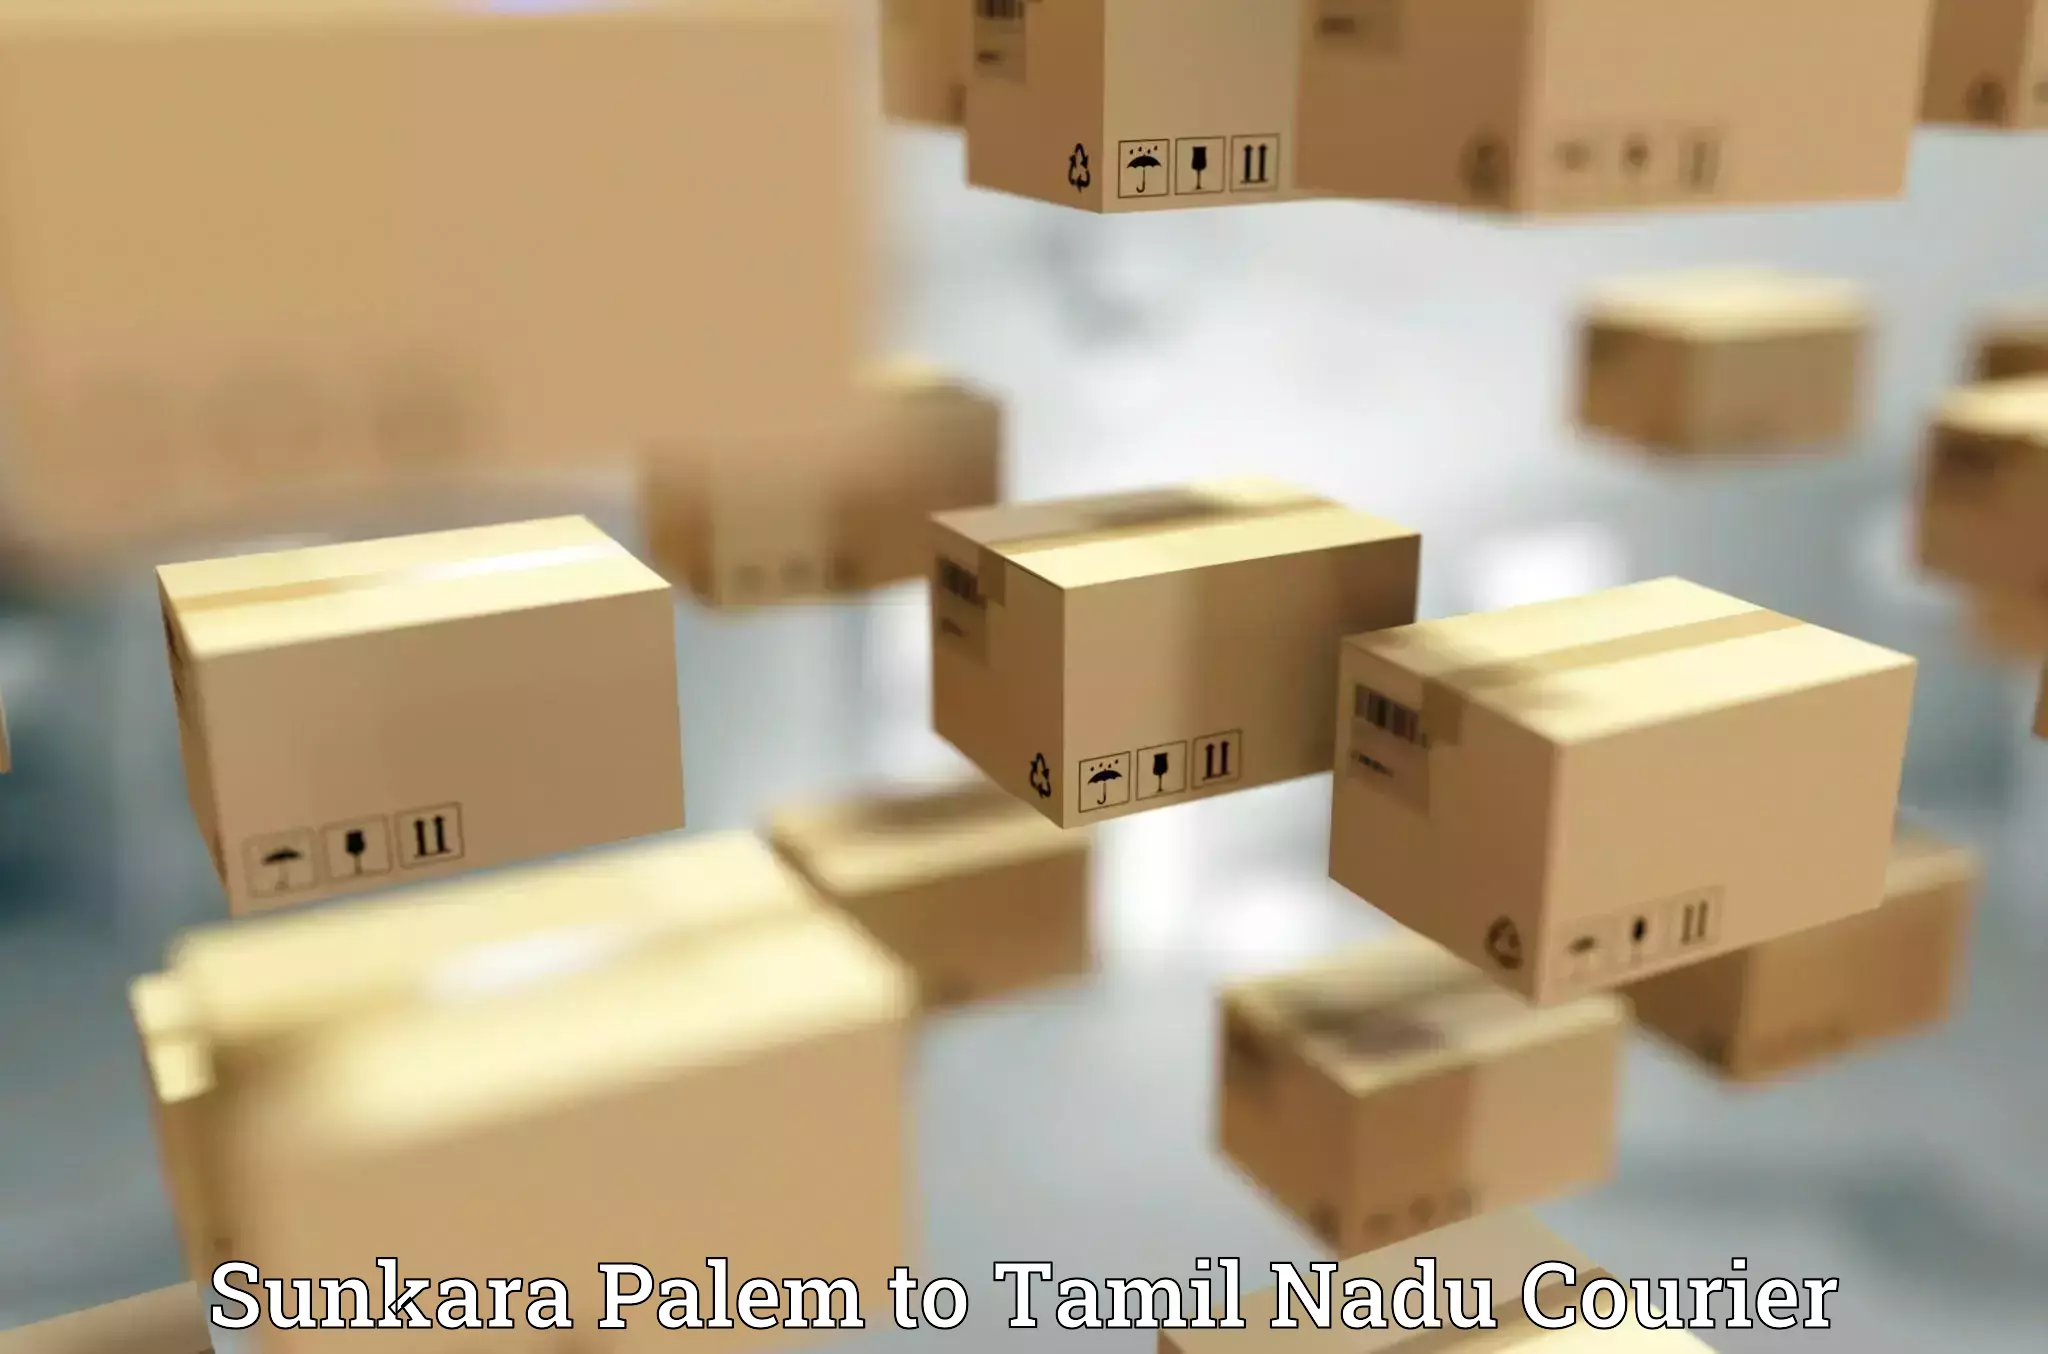 Luggage transport logistics Sunkara Palem to Tamil Nadu